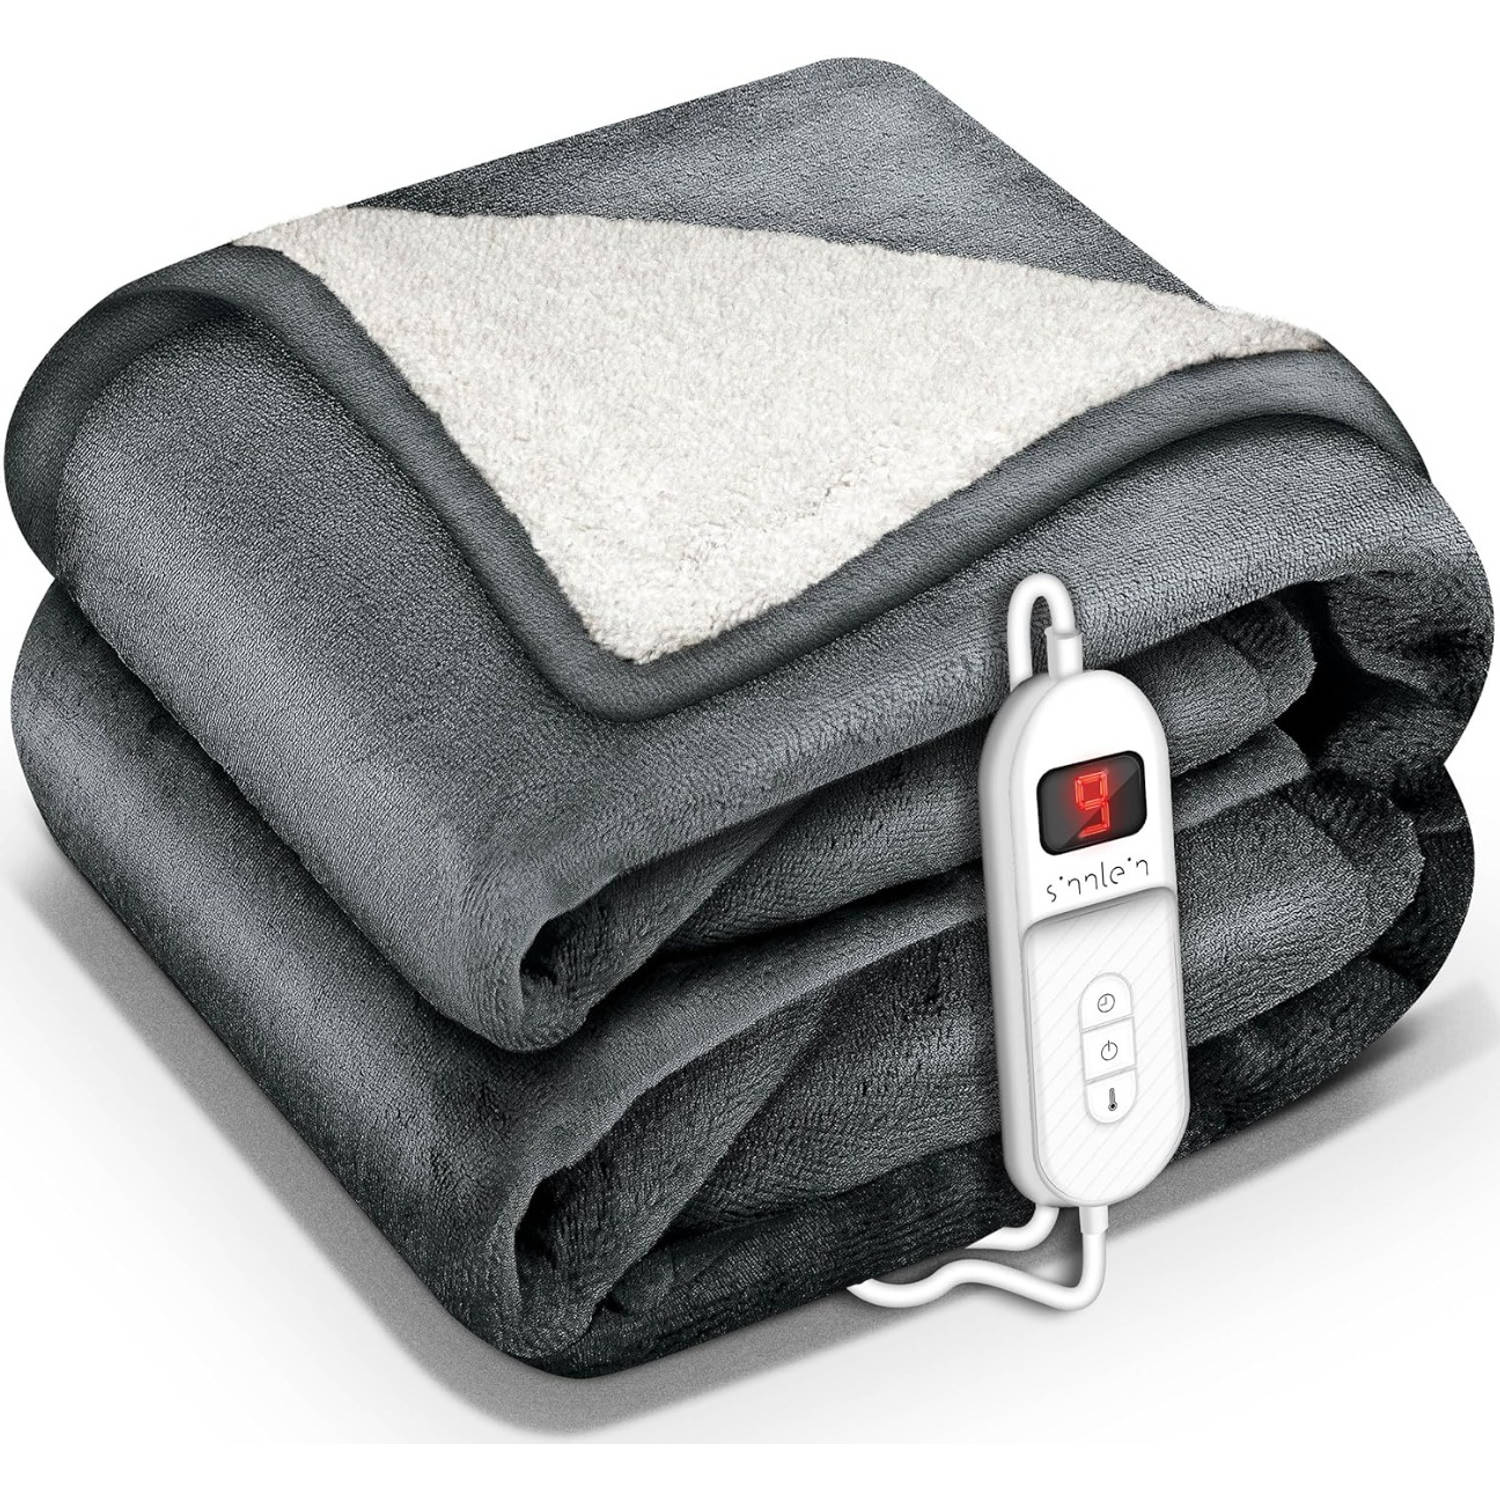 Sinnlein- Elektrische deken met automatische uitschakeling, donkergrijs, 180 x 130 cm, warmtedeken met 9 temperatuurn...